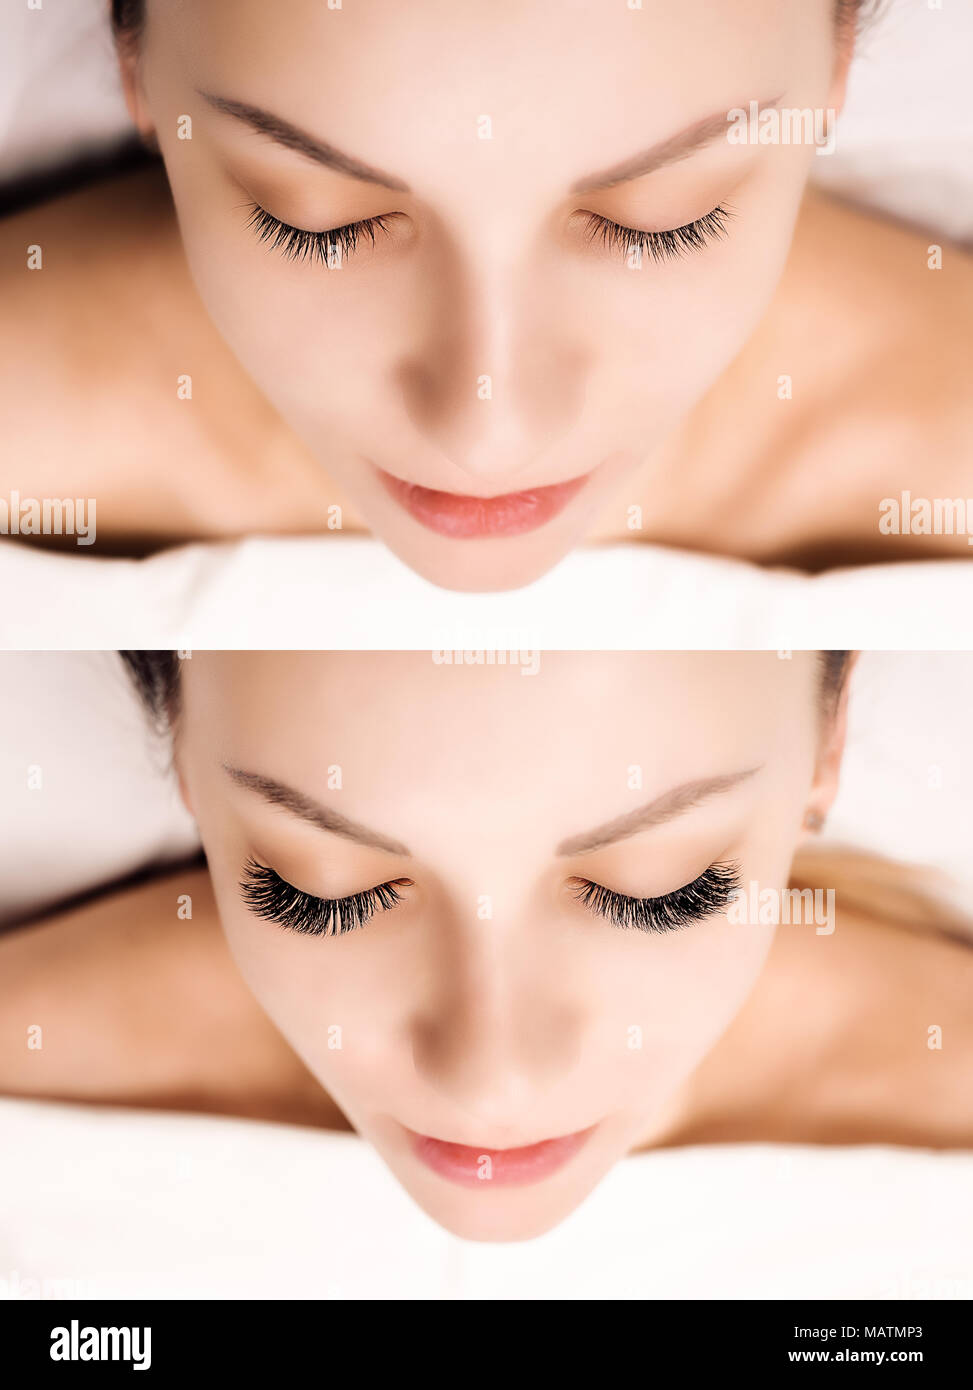 Extension delle ciglia. Confronto di occhi femmina prima e dopo. Foto Stock